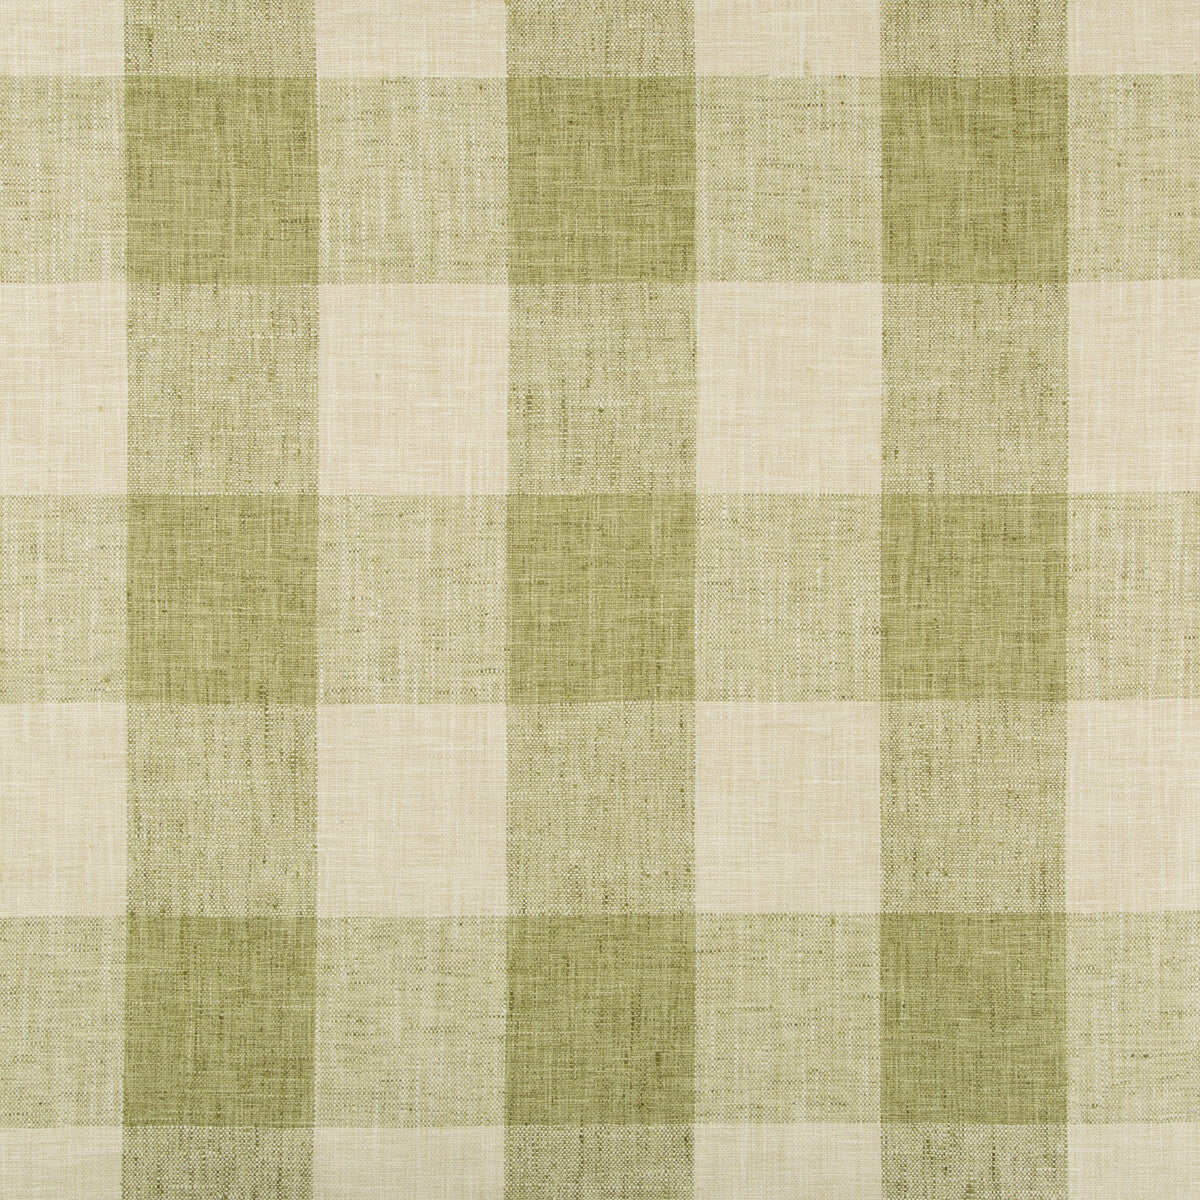 Kravet Basics fabric in 34090-3 color - pattern 34090.3.0 - by Kravet Basics